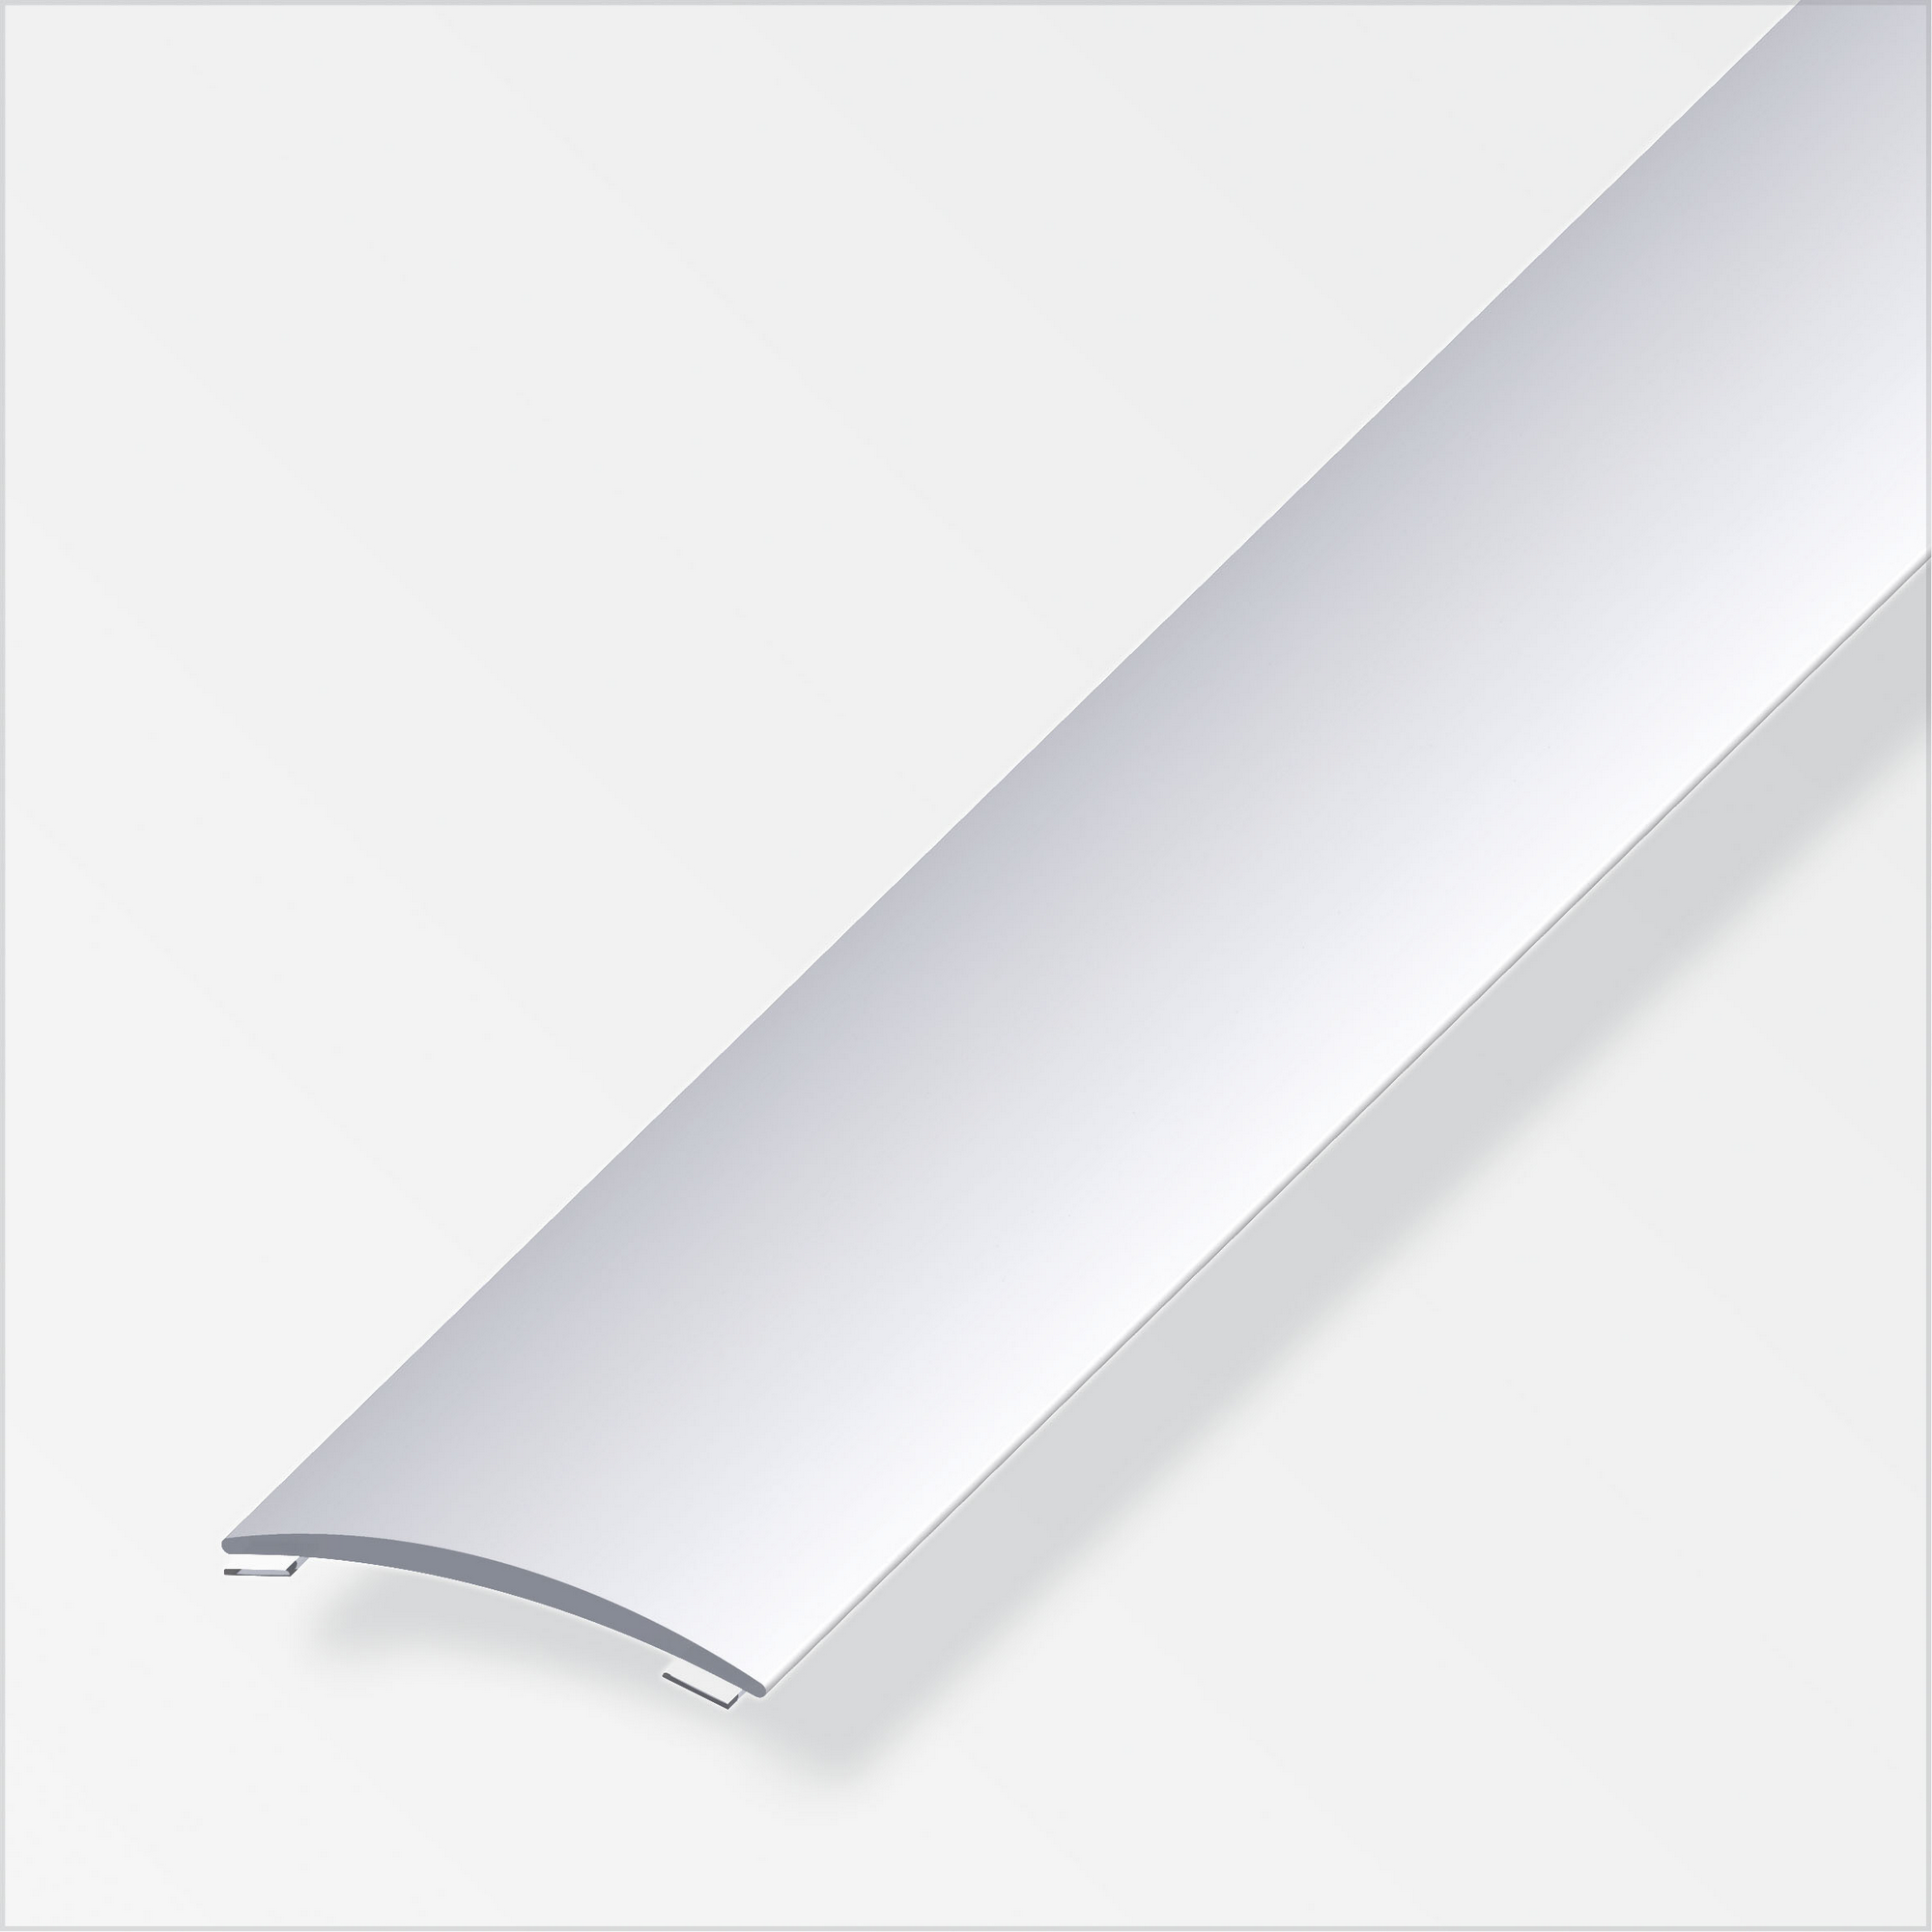 Übergangsprofil Aluminium silber, Breite 30 mm + product picture